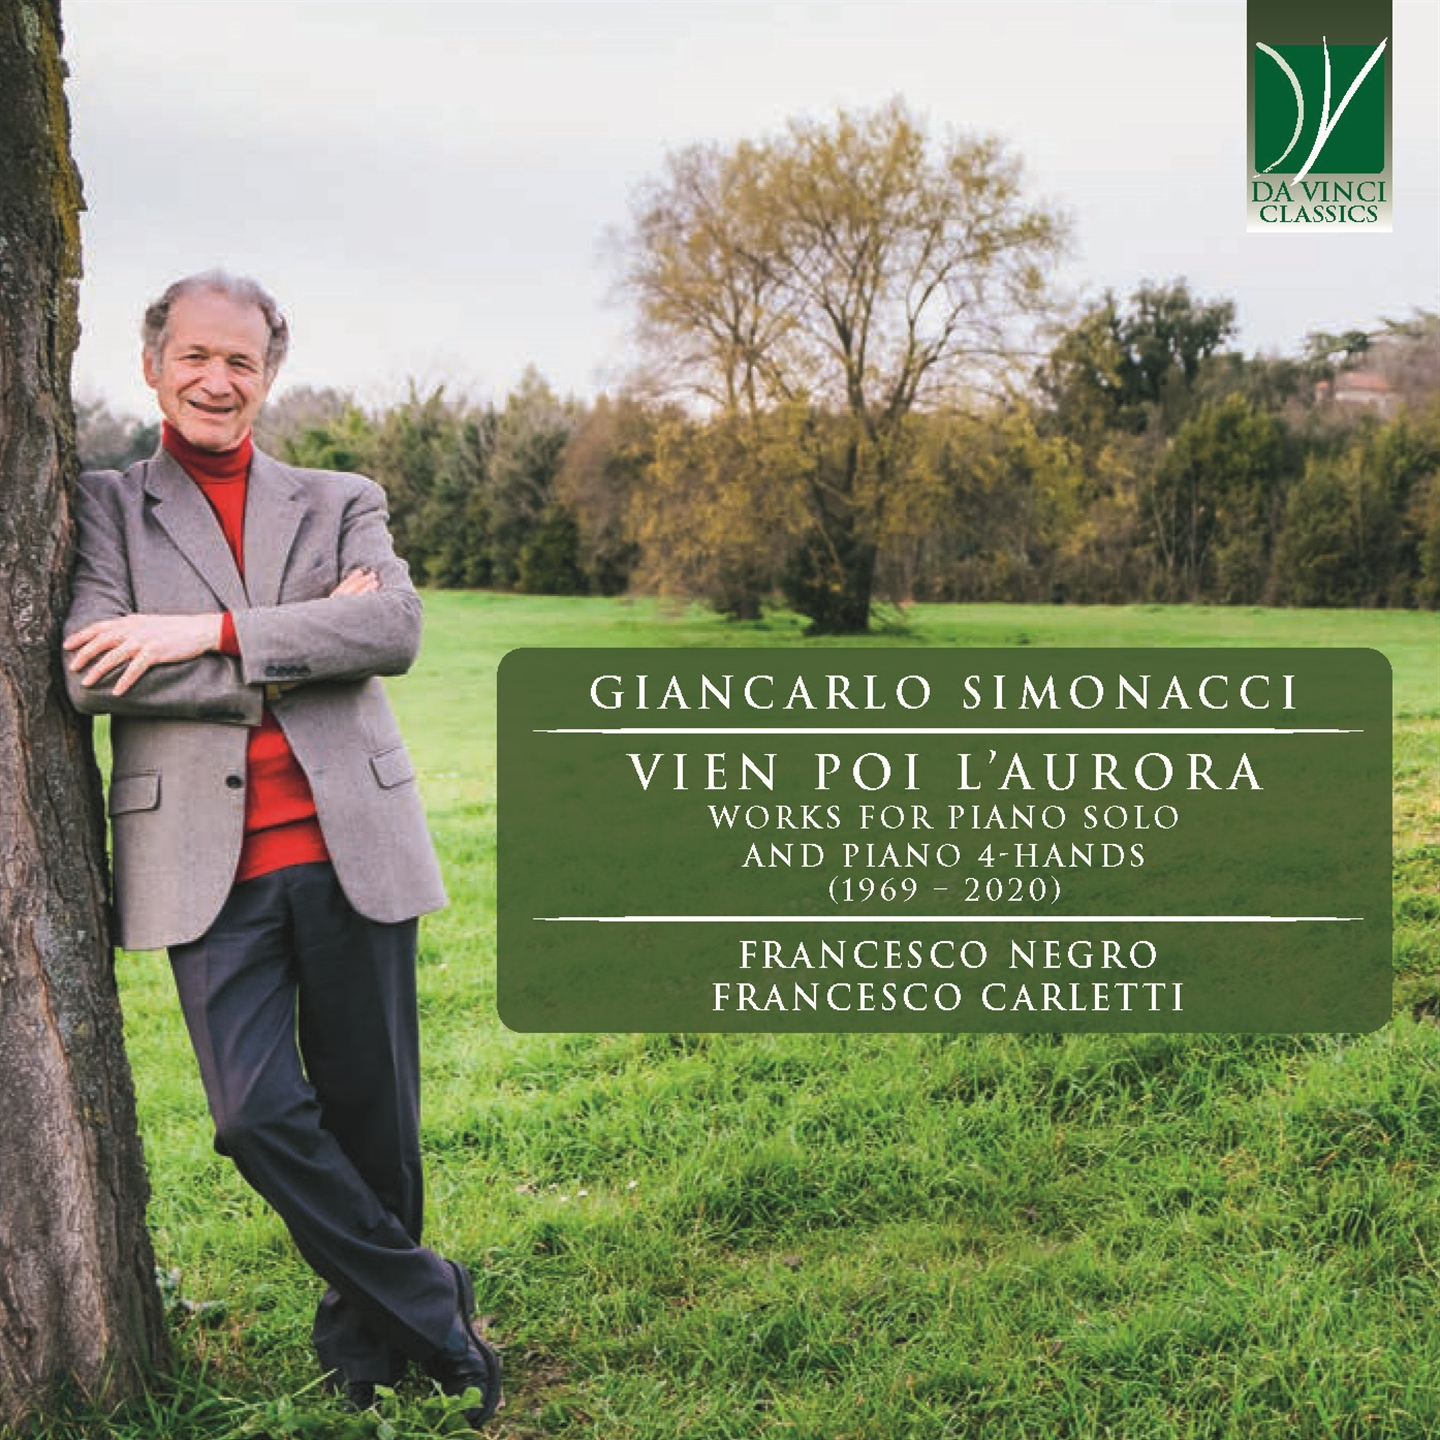 GIANCARLO SIMONACCI: VIEN POI L’AURORA, WORKS FOR PIANO SOLO AND PIANO 4-HANDS